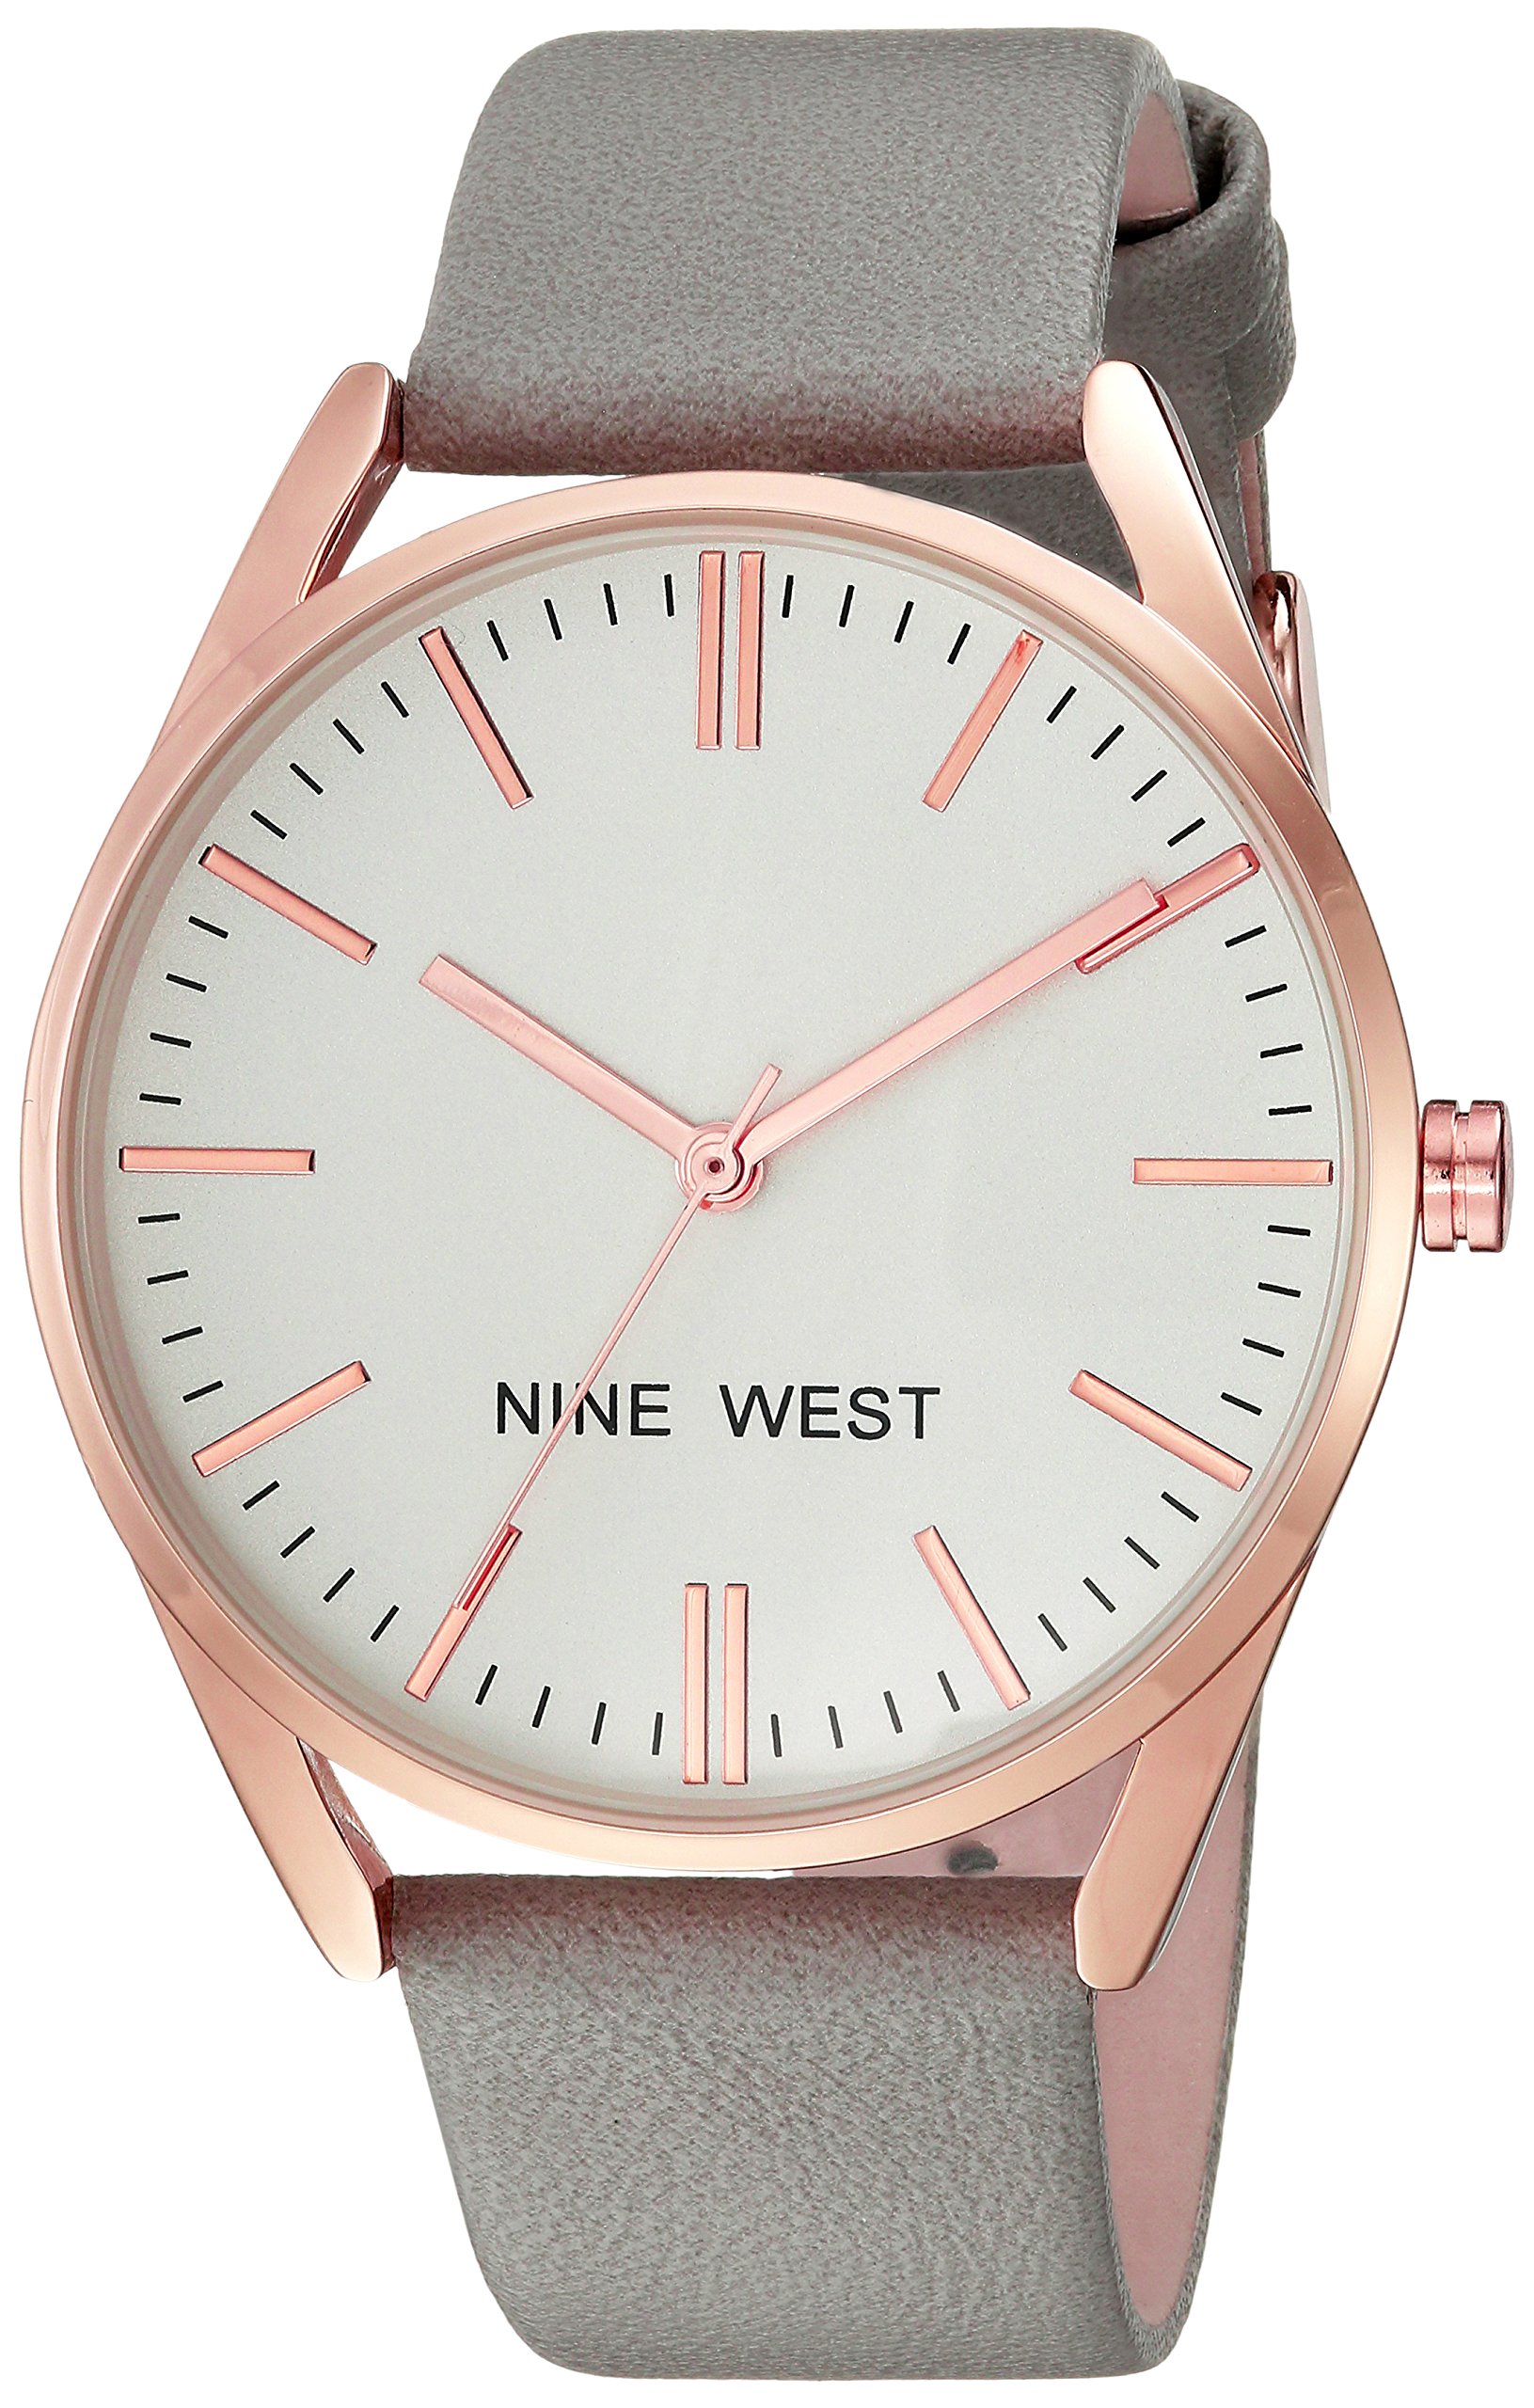 Nine West Women's Strap Watch